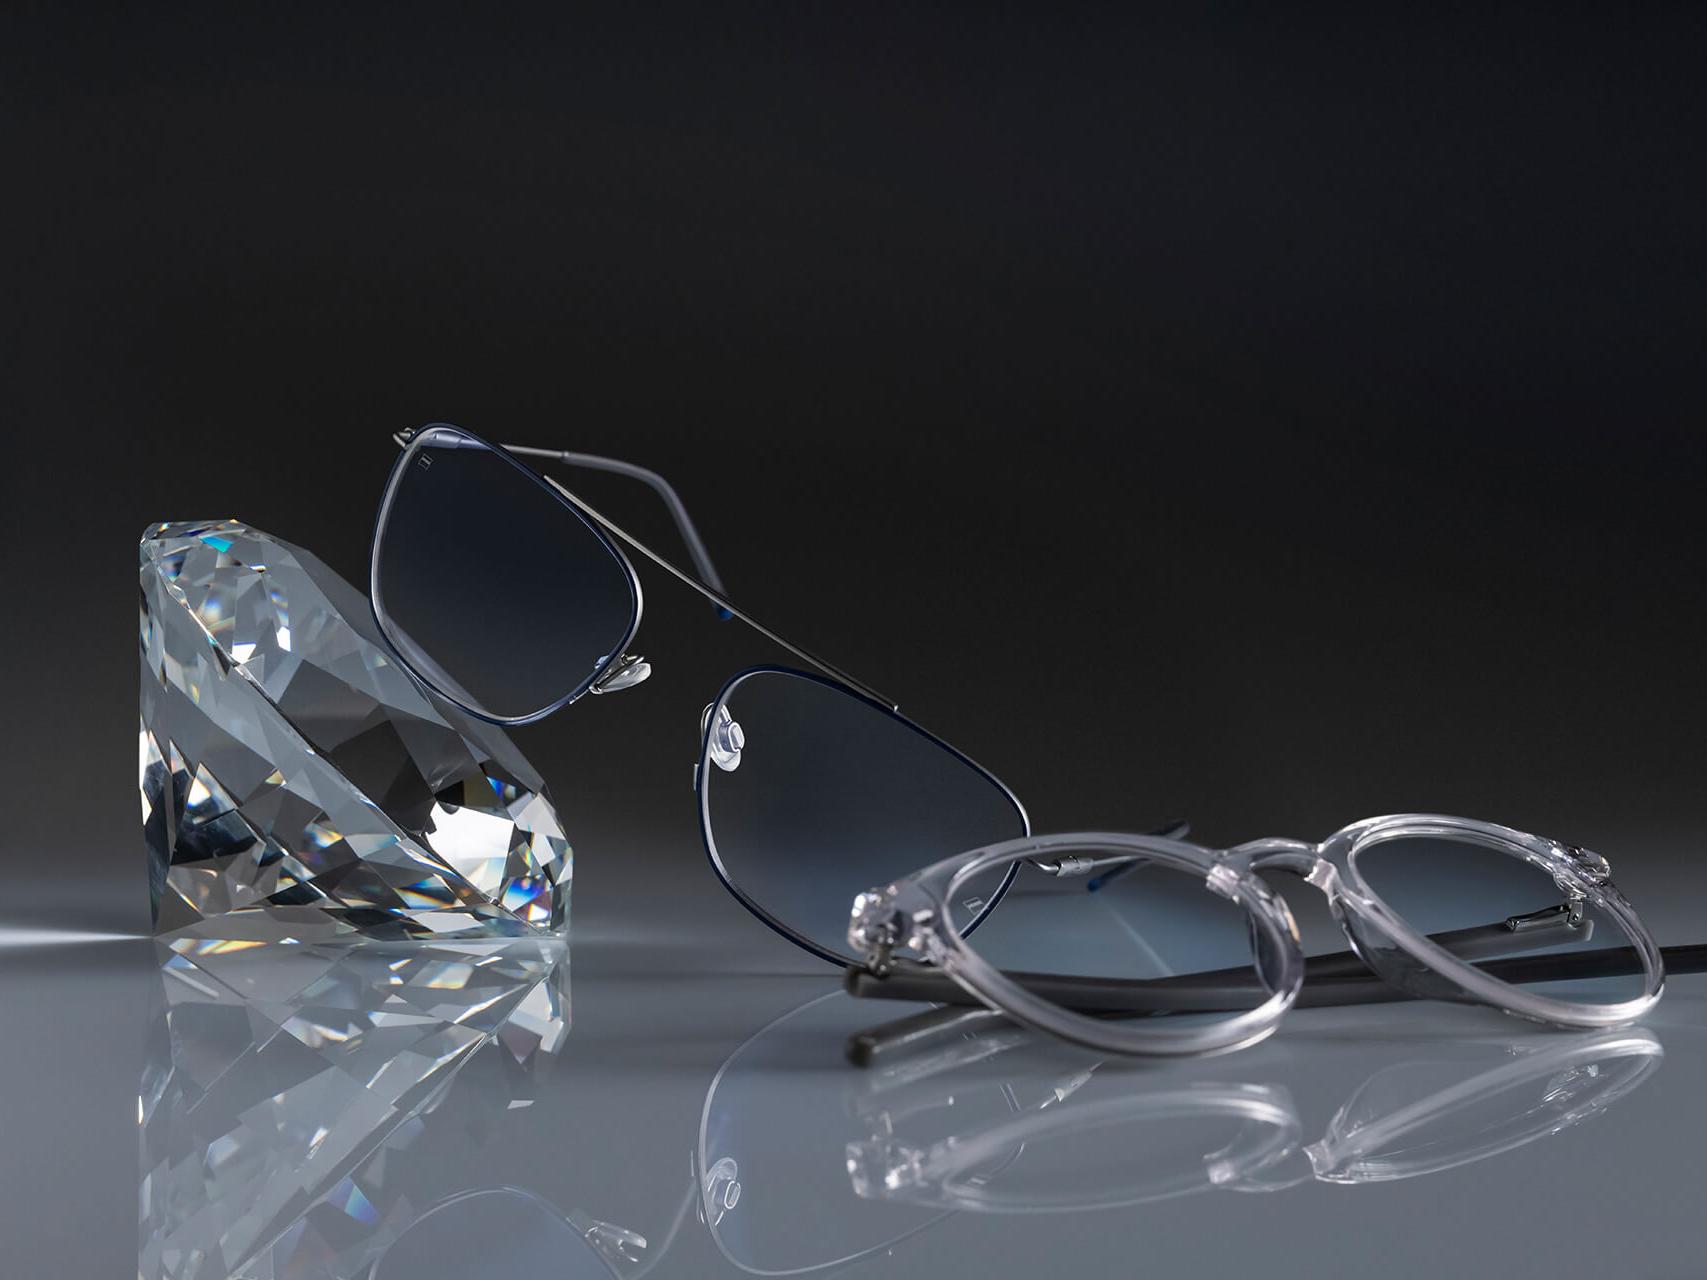 Kahdet ZEISS-linsseillä varustetut silmälasit, joissa on kaikkien aikojen kovin ZEISS-pinnoite – DuraVision® Platinum. Toiset silmälasit nojaavat kristallia vasten, toiset on asetettu sangat taitettuna alustaa vasten. Molemmissa on kirkkaat linssit ilman sinertävää heijastusta.